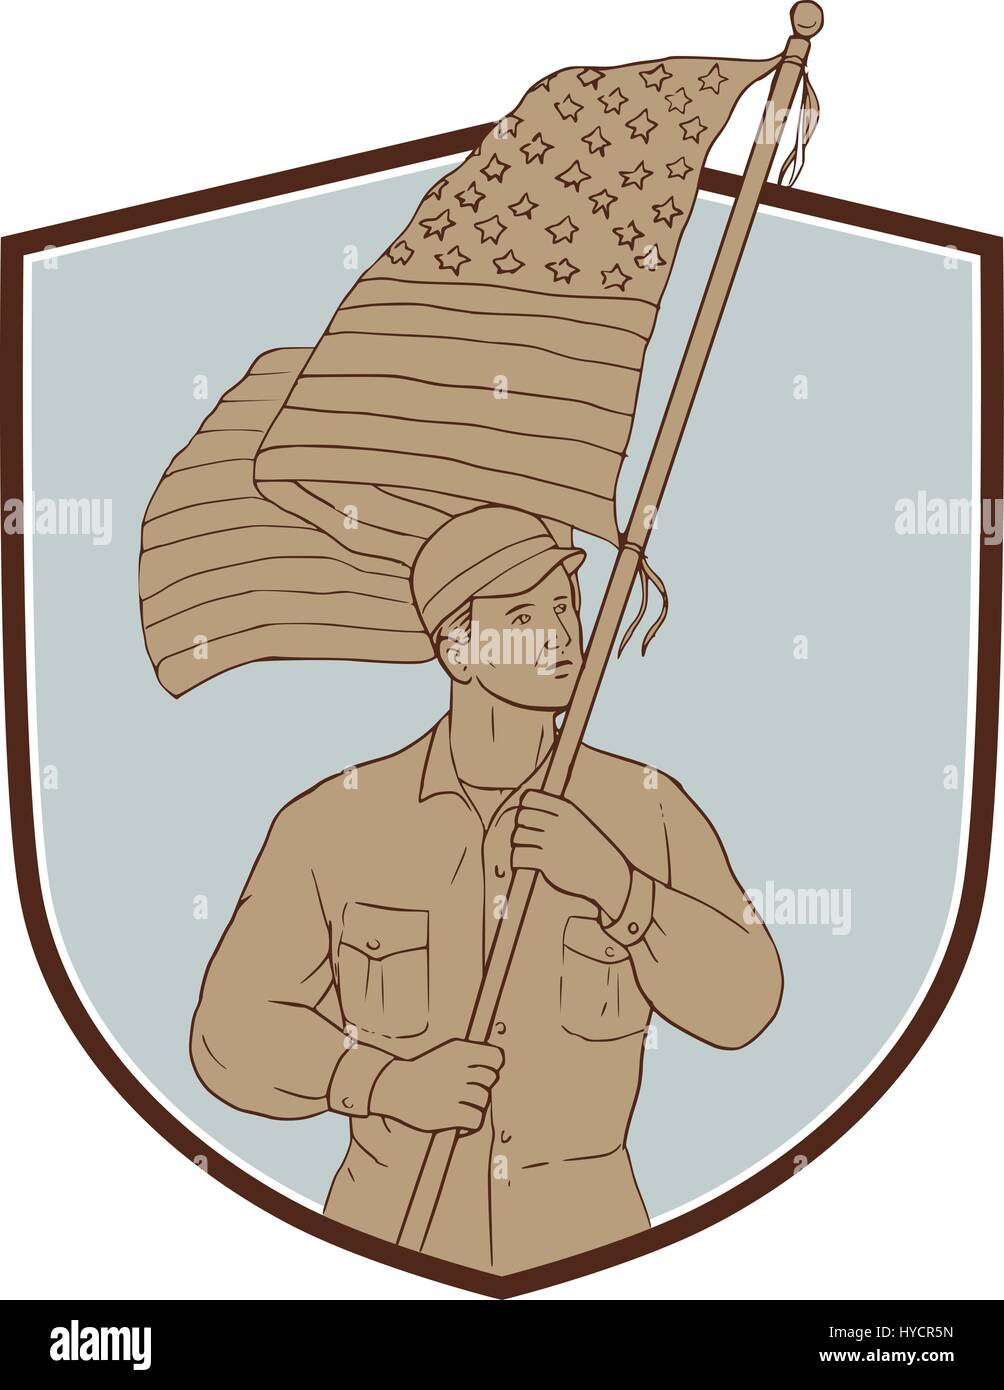 Croquis dessin illustration de style militaire, un soldat américain forme holding usa flag à côté de l'écran à l'intérieur set crest isolées sur des ba Illustration de Vecteur